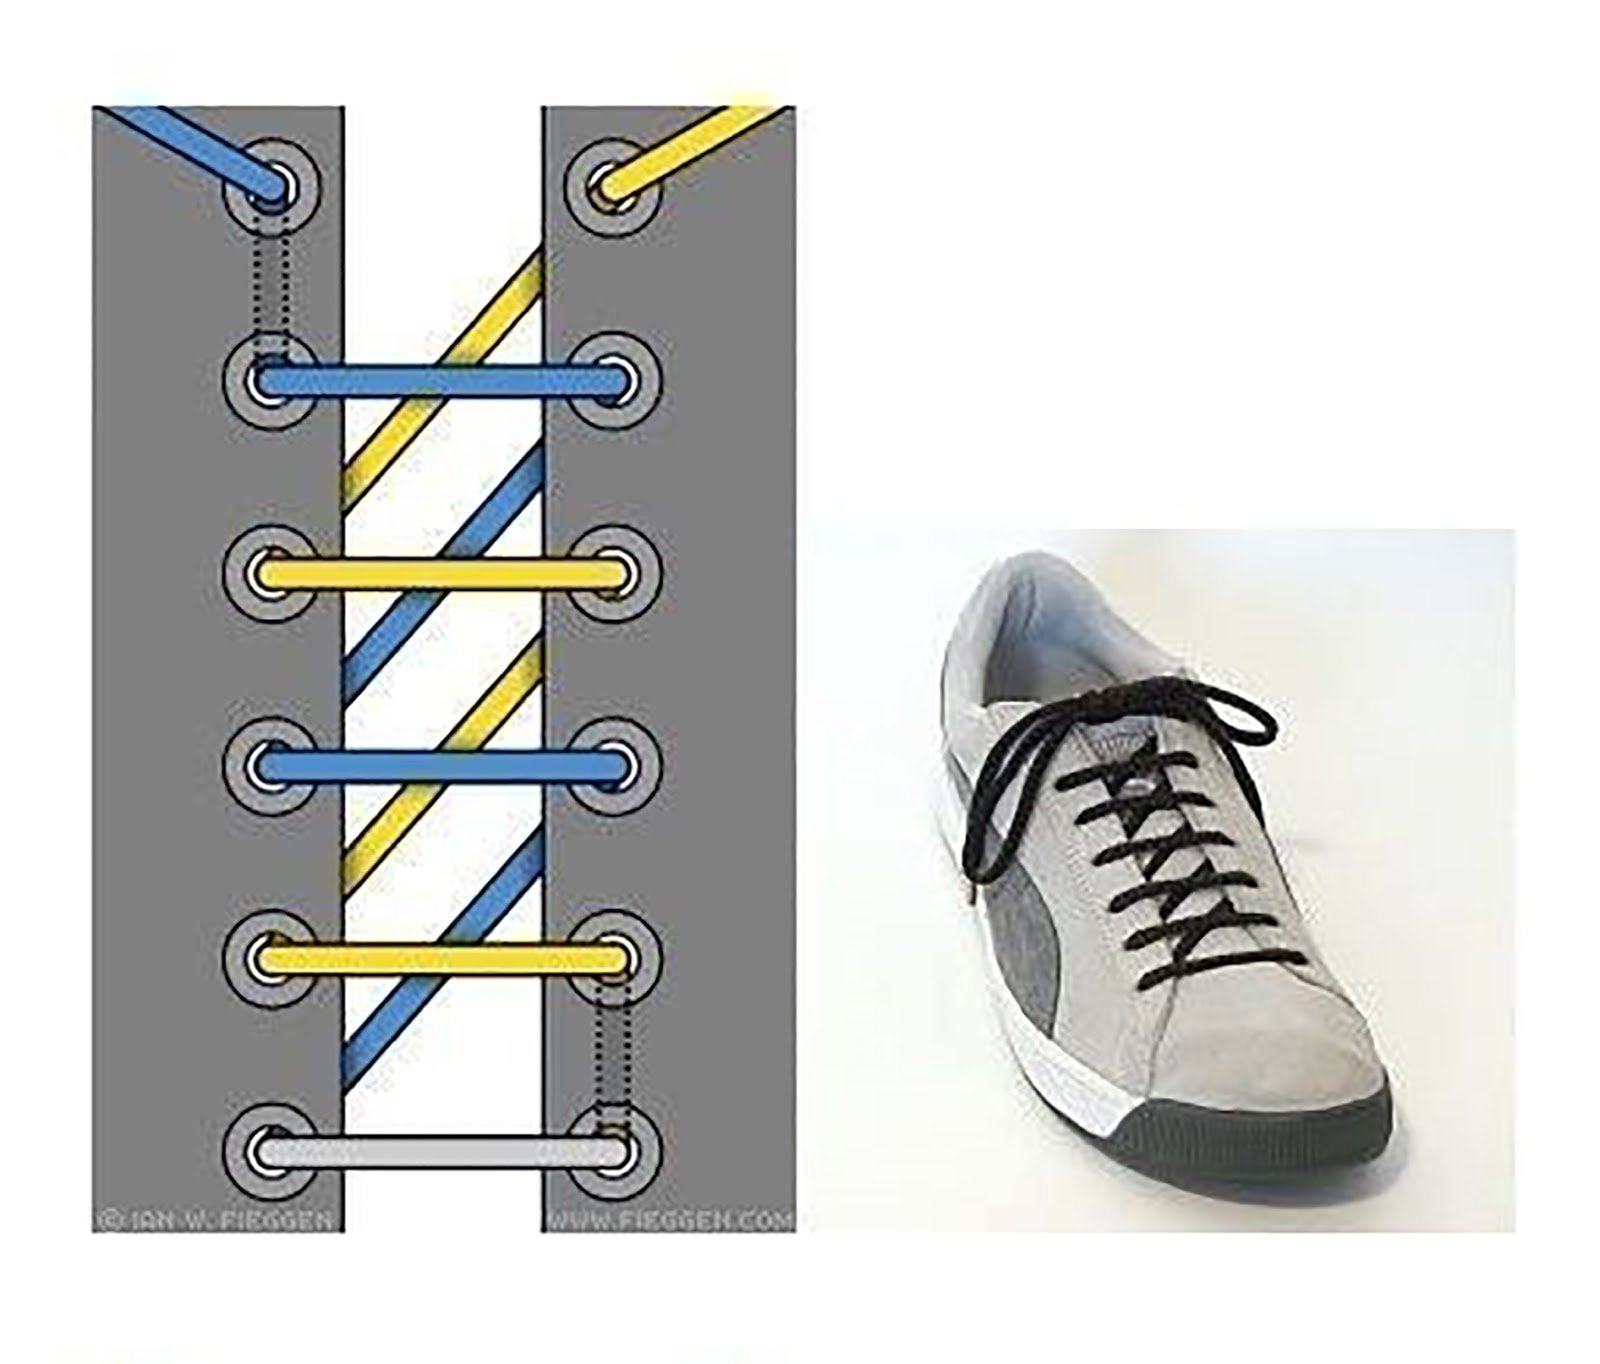 Спортивная шнуровка. Типы шнурования шнурков на 5 дырок. Шнурки зашнуровать 6 дырок. Способы завязывания шнурков на 5 дырок. Типы шнурования шнурков на 6 отверстий.